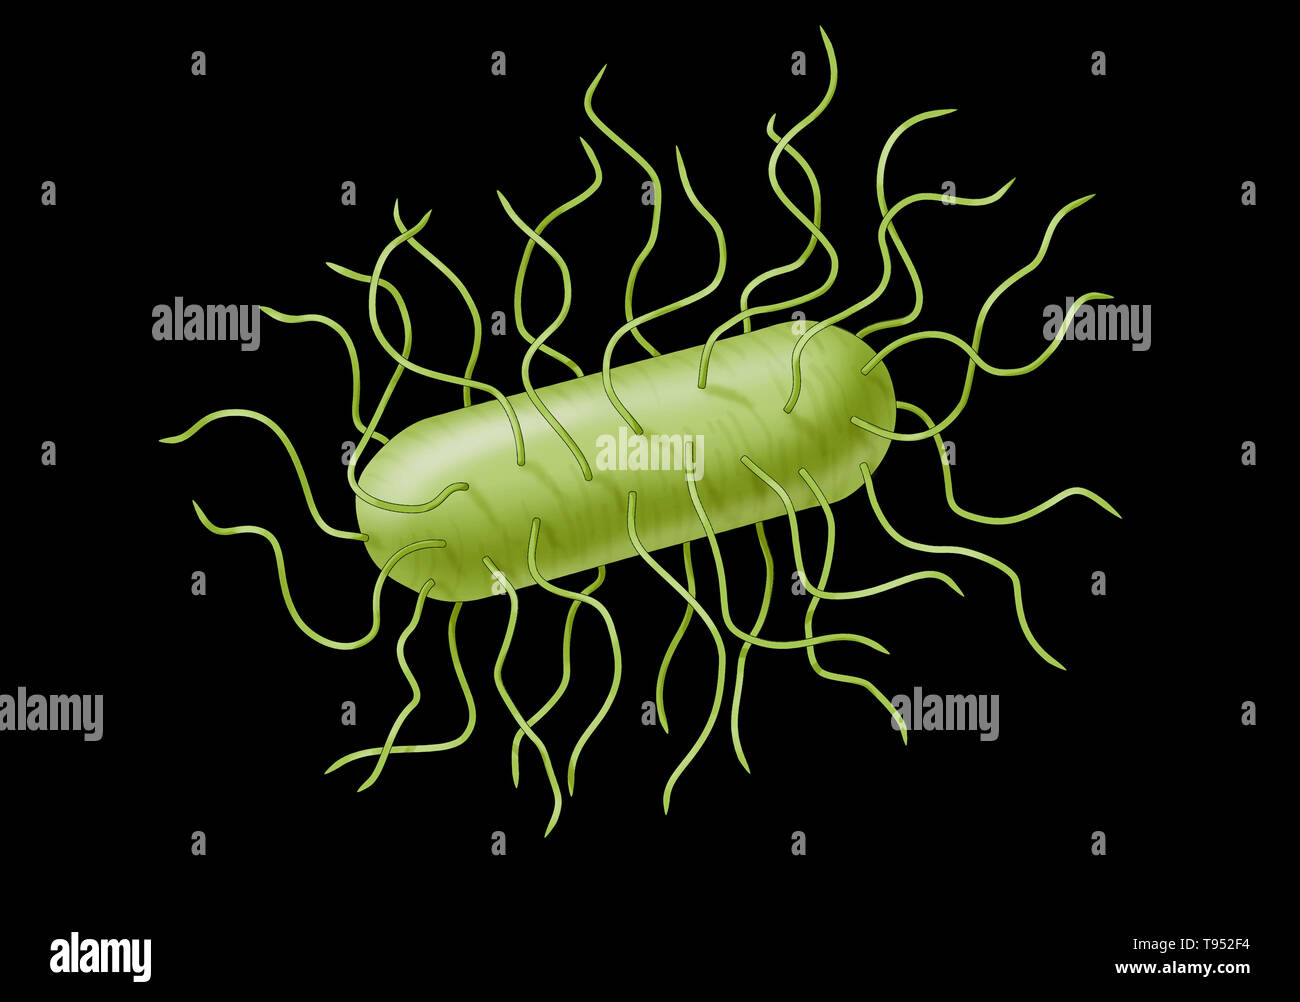 Batteri E. coli. Escherichia coli è un batterio gram-negativi, facultatively anaerobica, a forma di asta, coliformi batterio del genere Escherichia che si trova comunemente nell'intestino inferiore di caldo-blooded organismi (endoterme). La maggior parte dei ceppi di E. coli sono innocui, ma alcuni sierotipi possono causare gravi intossicazioni alimentari nei loro eserciti e a volte sono responsabili per i richiami del prodotto a causa di contaminazione alimentare. Foto Stock